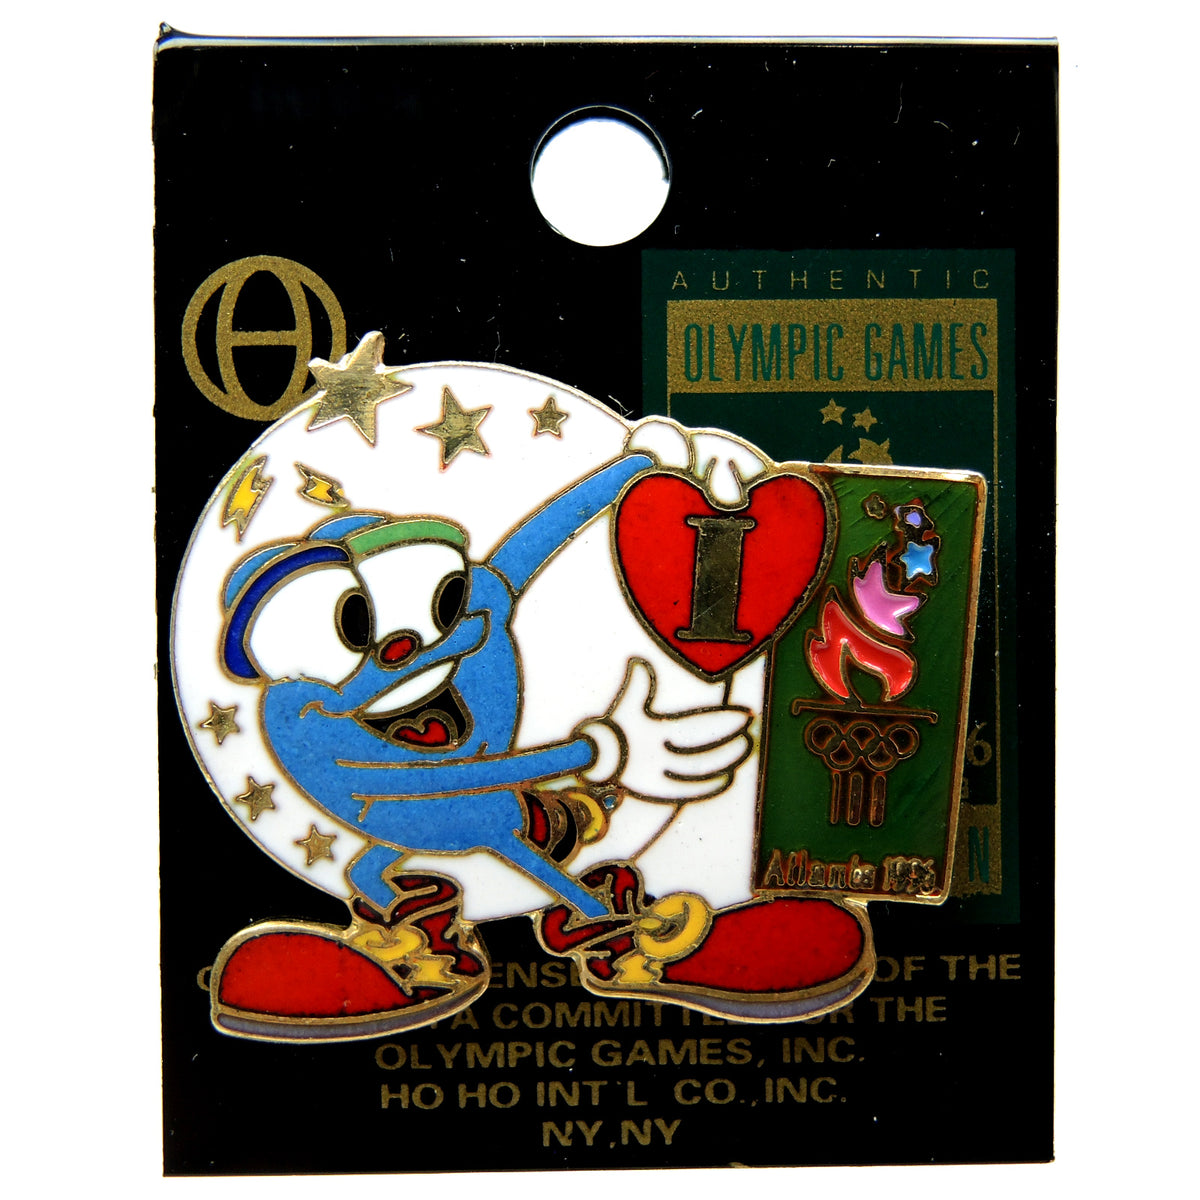 IZZY 1996 Atlanta Olympics Mascot - Pine Top Provisions